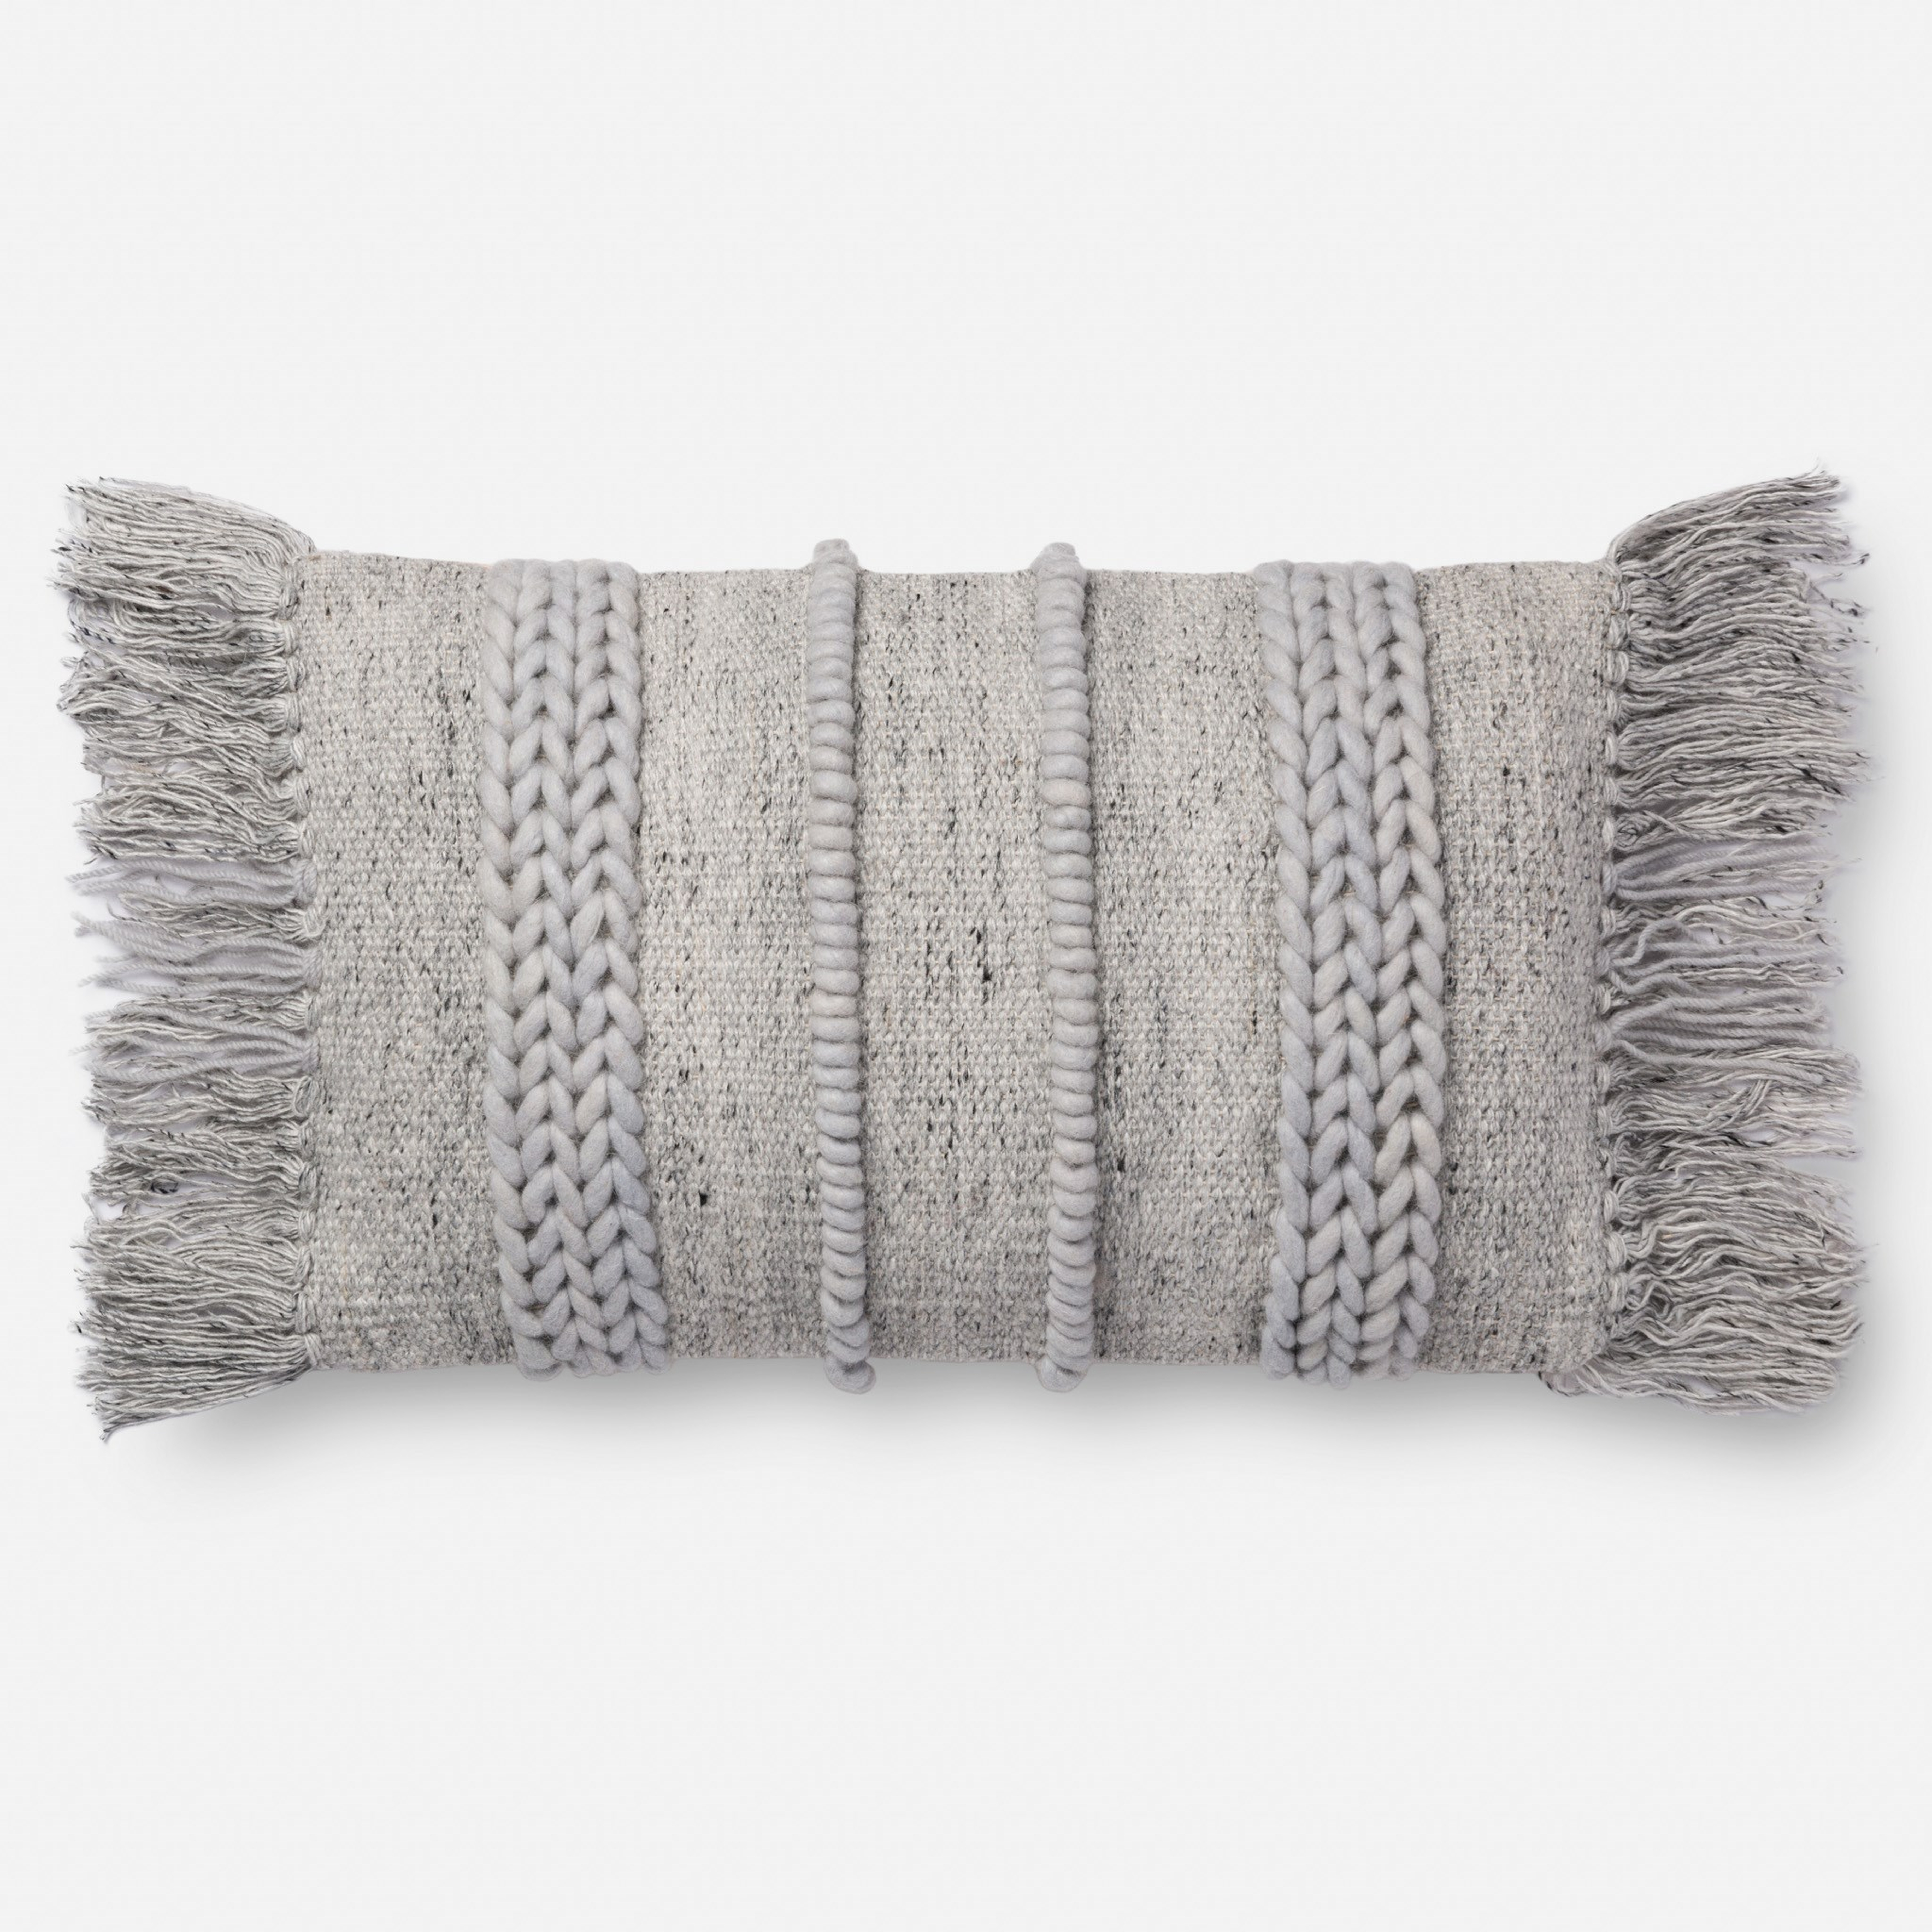 Fringe Lumbar Throw Pillow, 21" x 13", Gray - Loloi Rugs